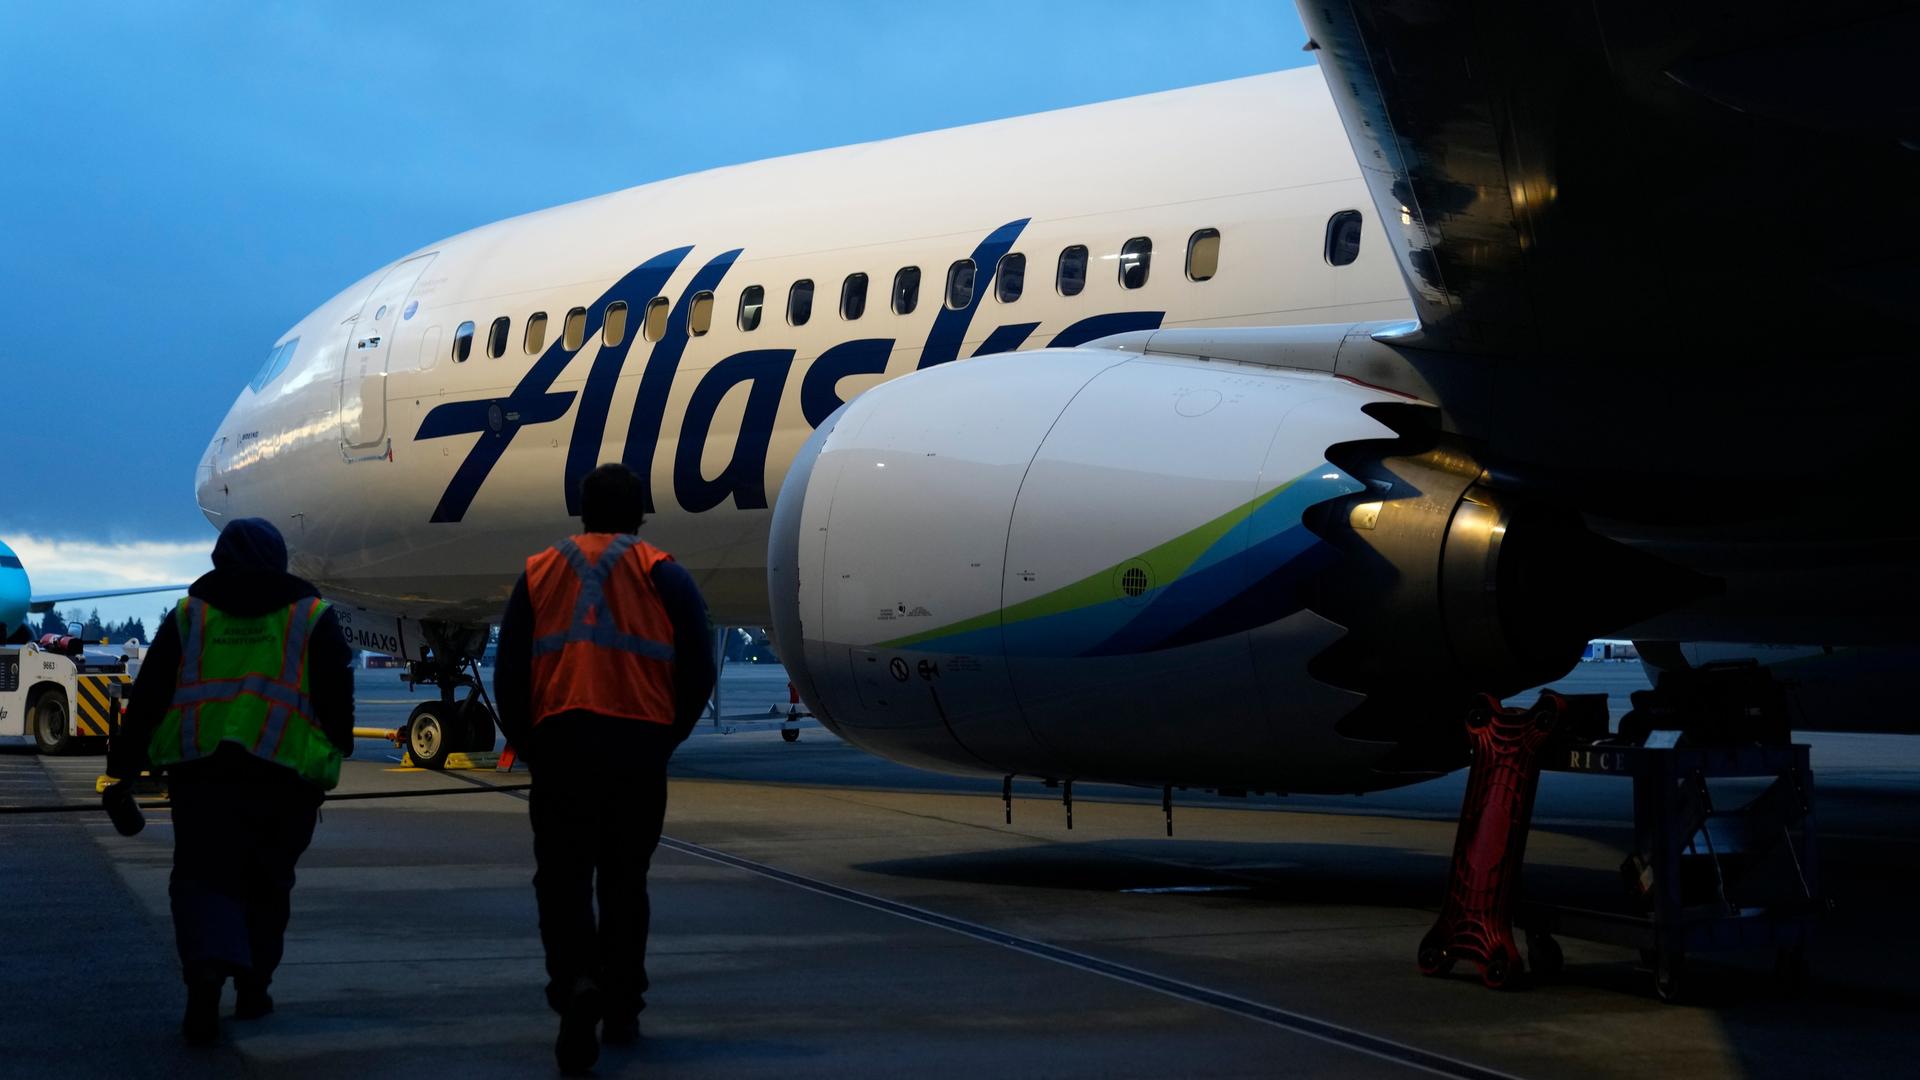 Eine Boeing mit Alaska-Airlines-Lackierung auf einem Rollfeld bei Dämmerung